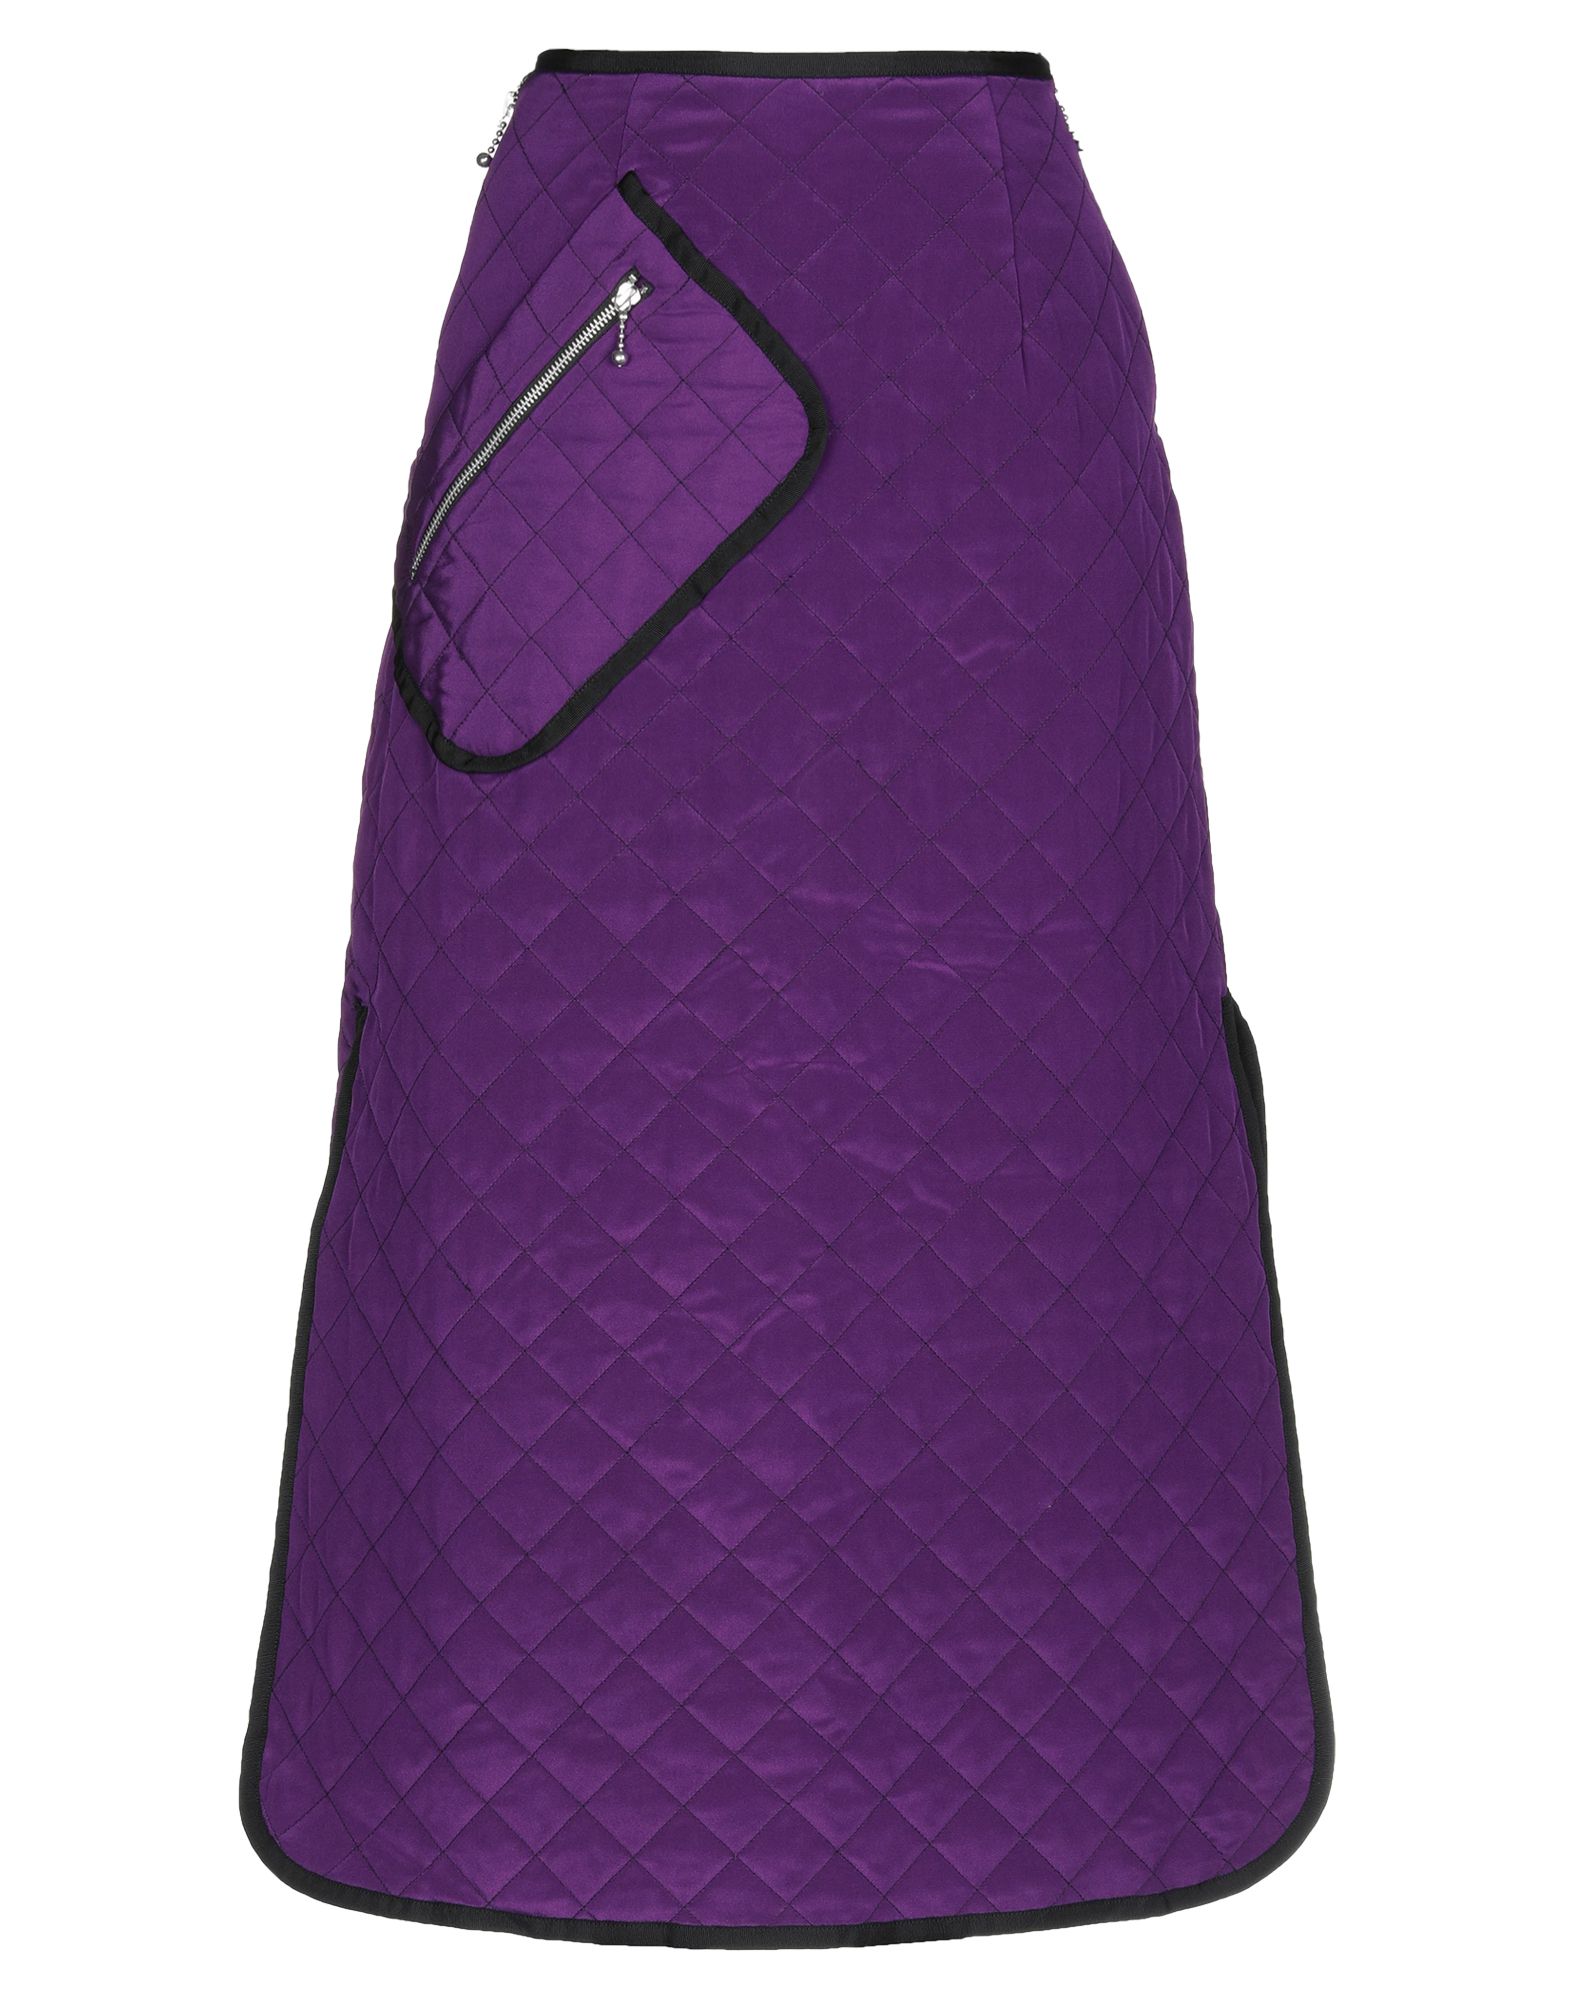 Длинная юбка  - Фиолетовый цвет